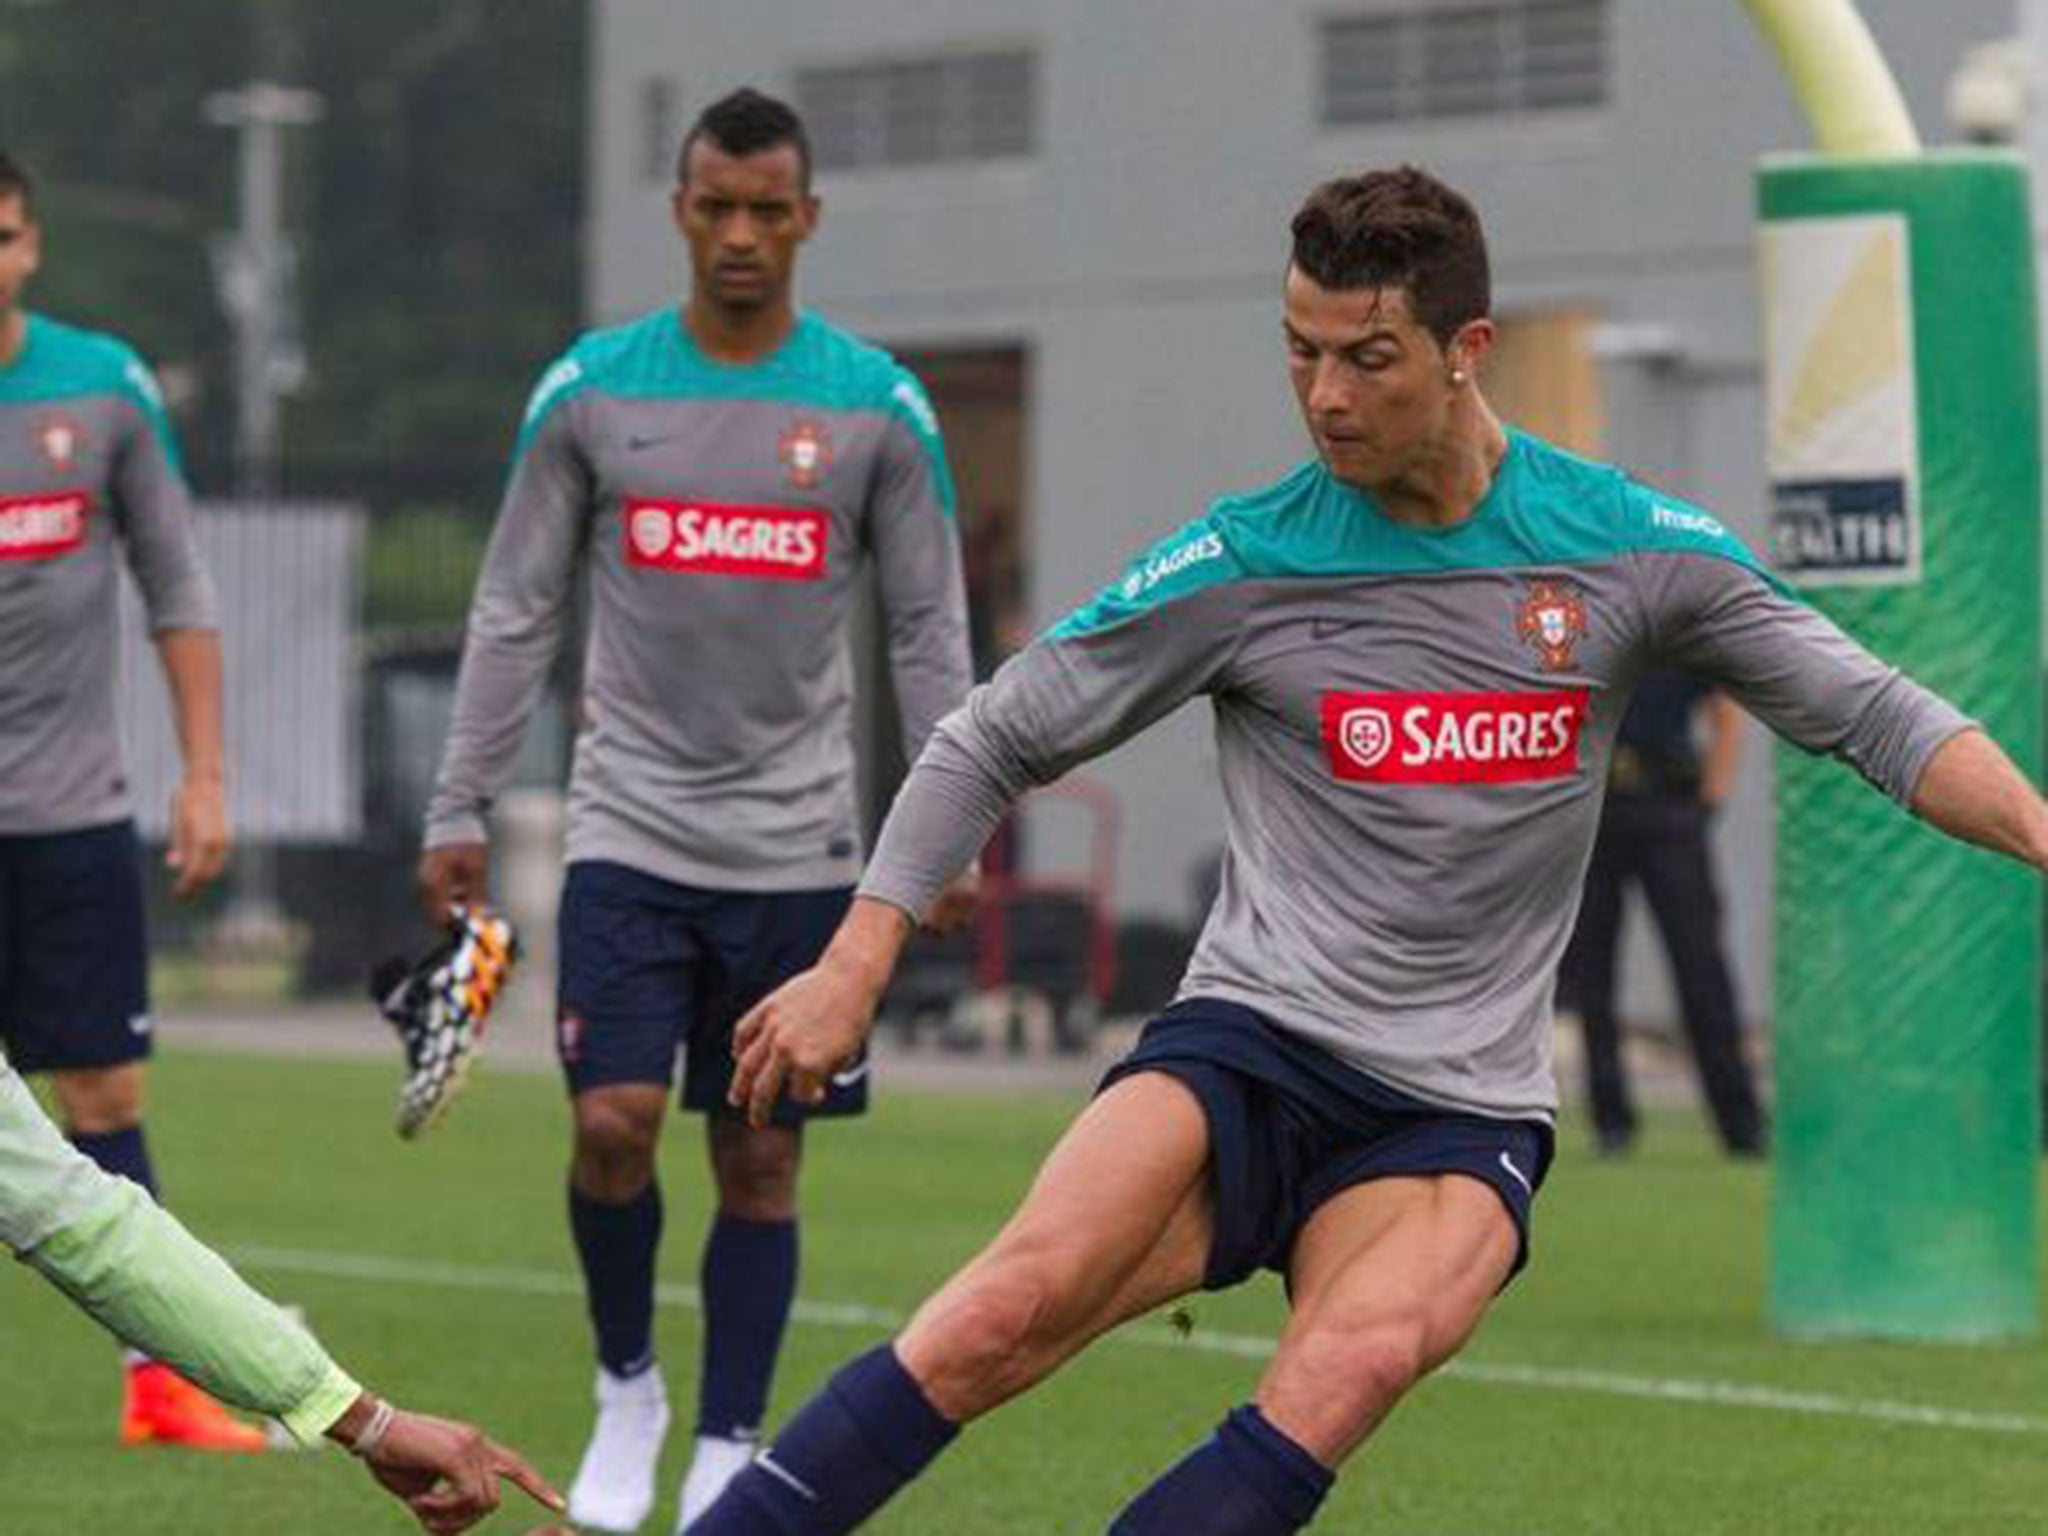 Cristiano Ronaldo in training with Portugal